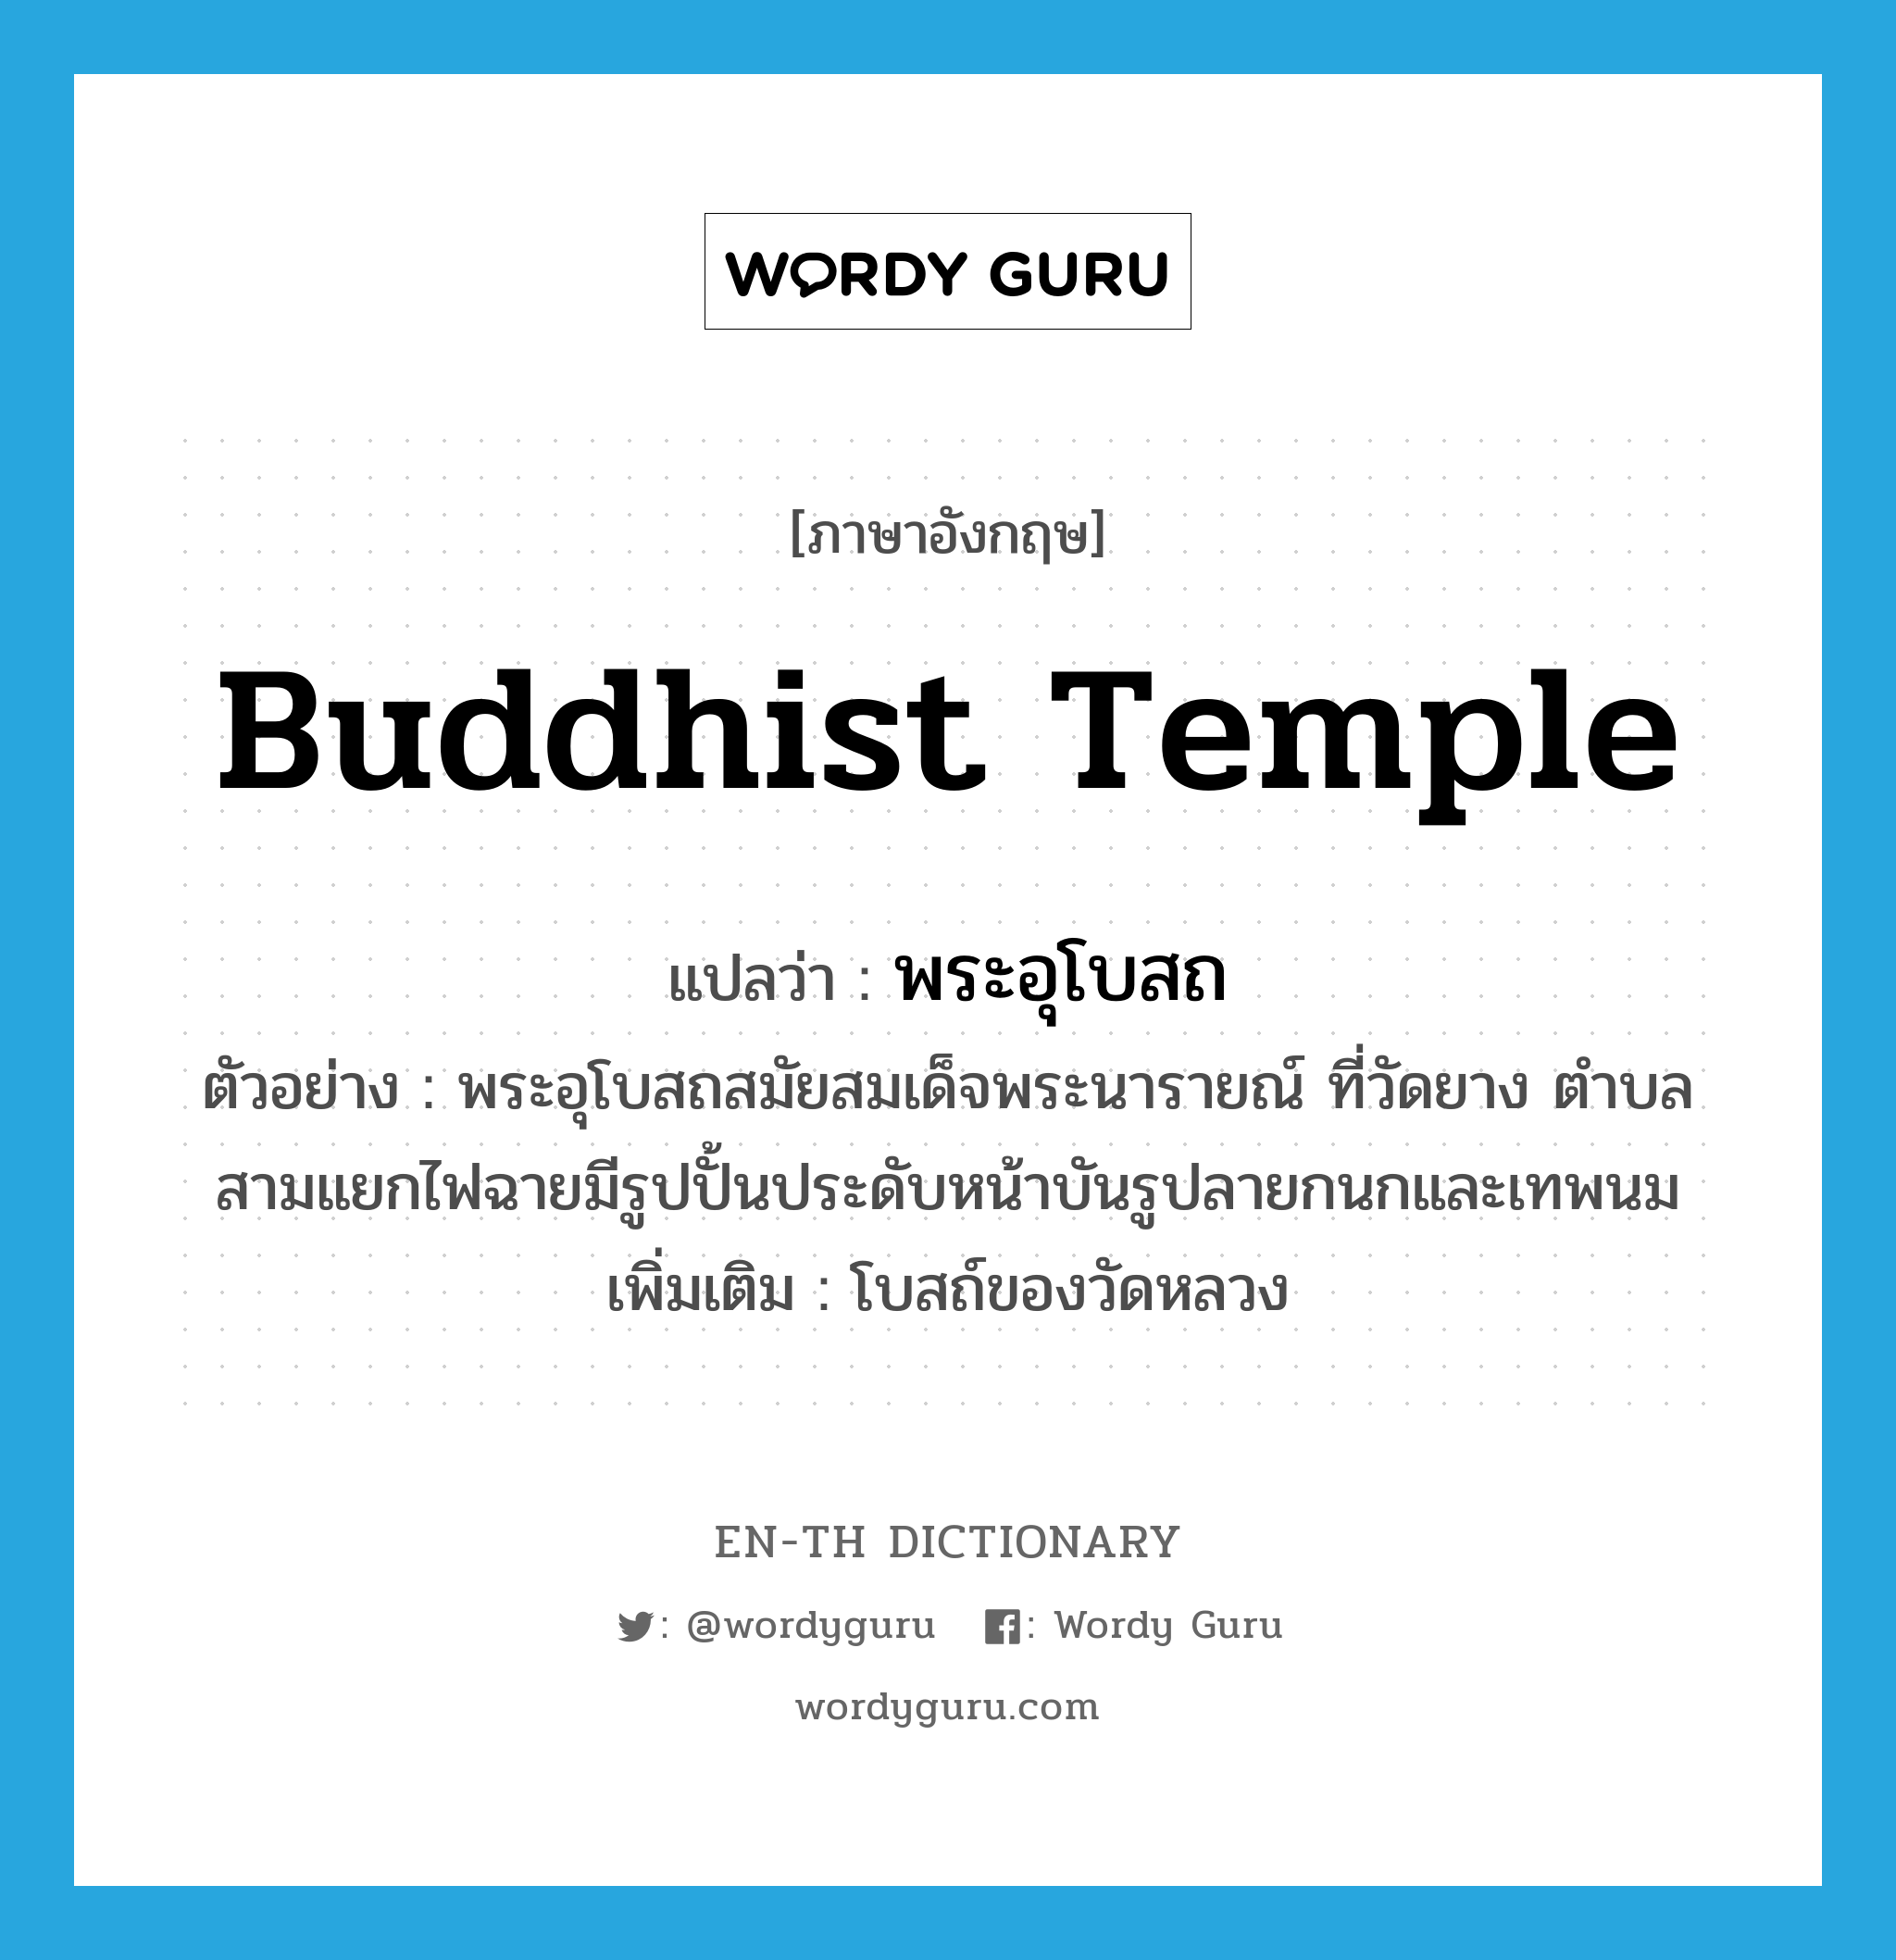 Buddhist temple แปลว่า?, คำศัพท์ภาษาอังกฤษ Buddhist temple แปลว่า พระอุโบสถ ประเภท N ตัวอย่าง พระอุโบสถสมัยสมเด็จพระนารายณ์ ที่วัดยาง ตำบลสามแยกไฟฉายมีรูปปั้นประดับหน้าบันรูปลายกนกและเทพนม เพิ่มเติม โบสถ์ของวัดหลวง หมวด N